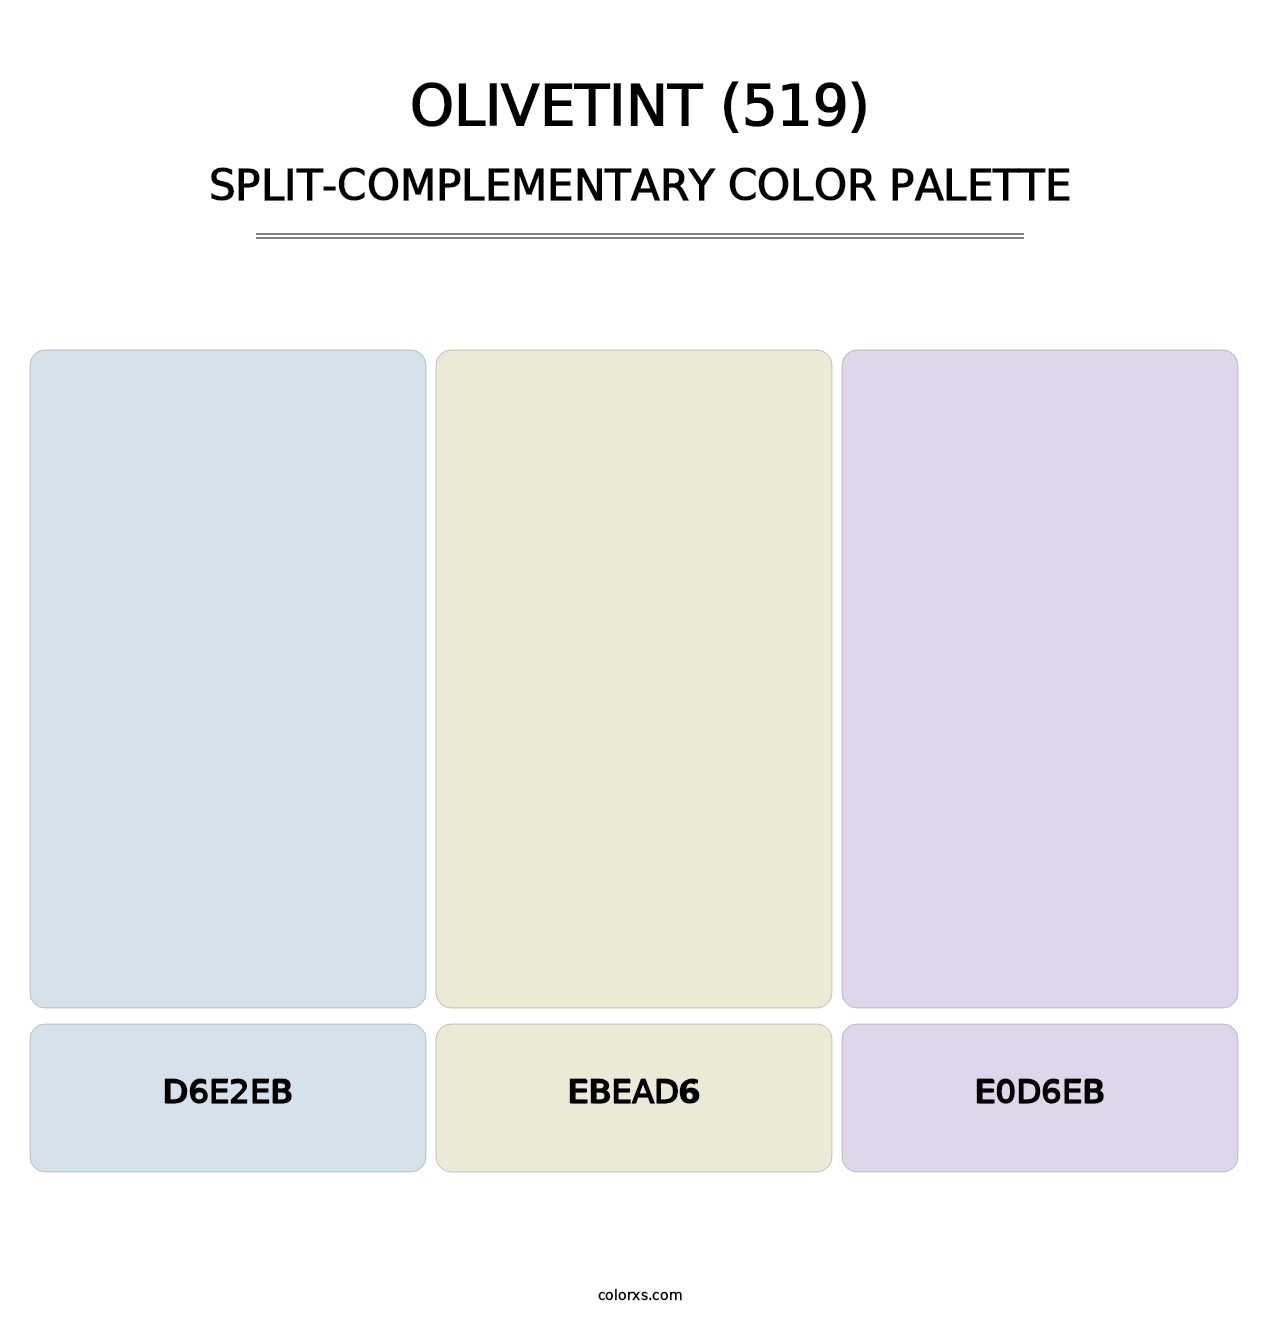 Olivetint (519) - Split-Complementary Color Palette